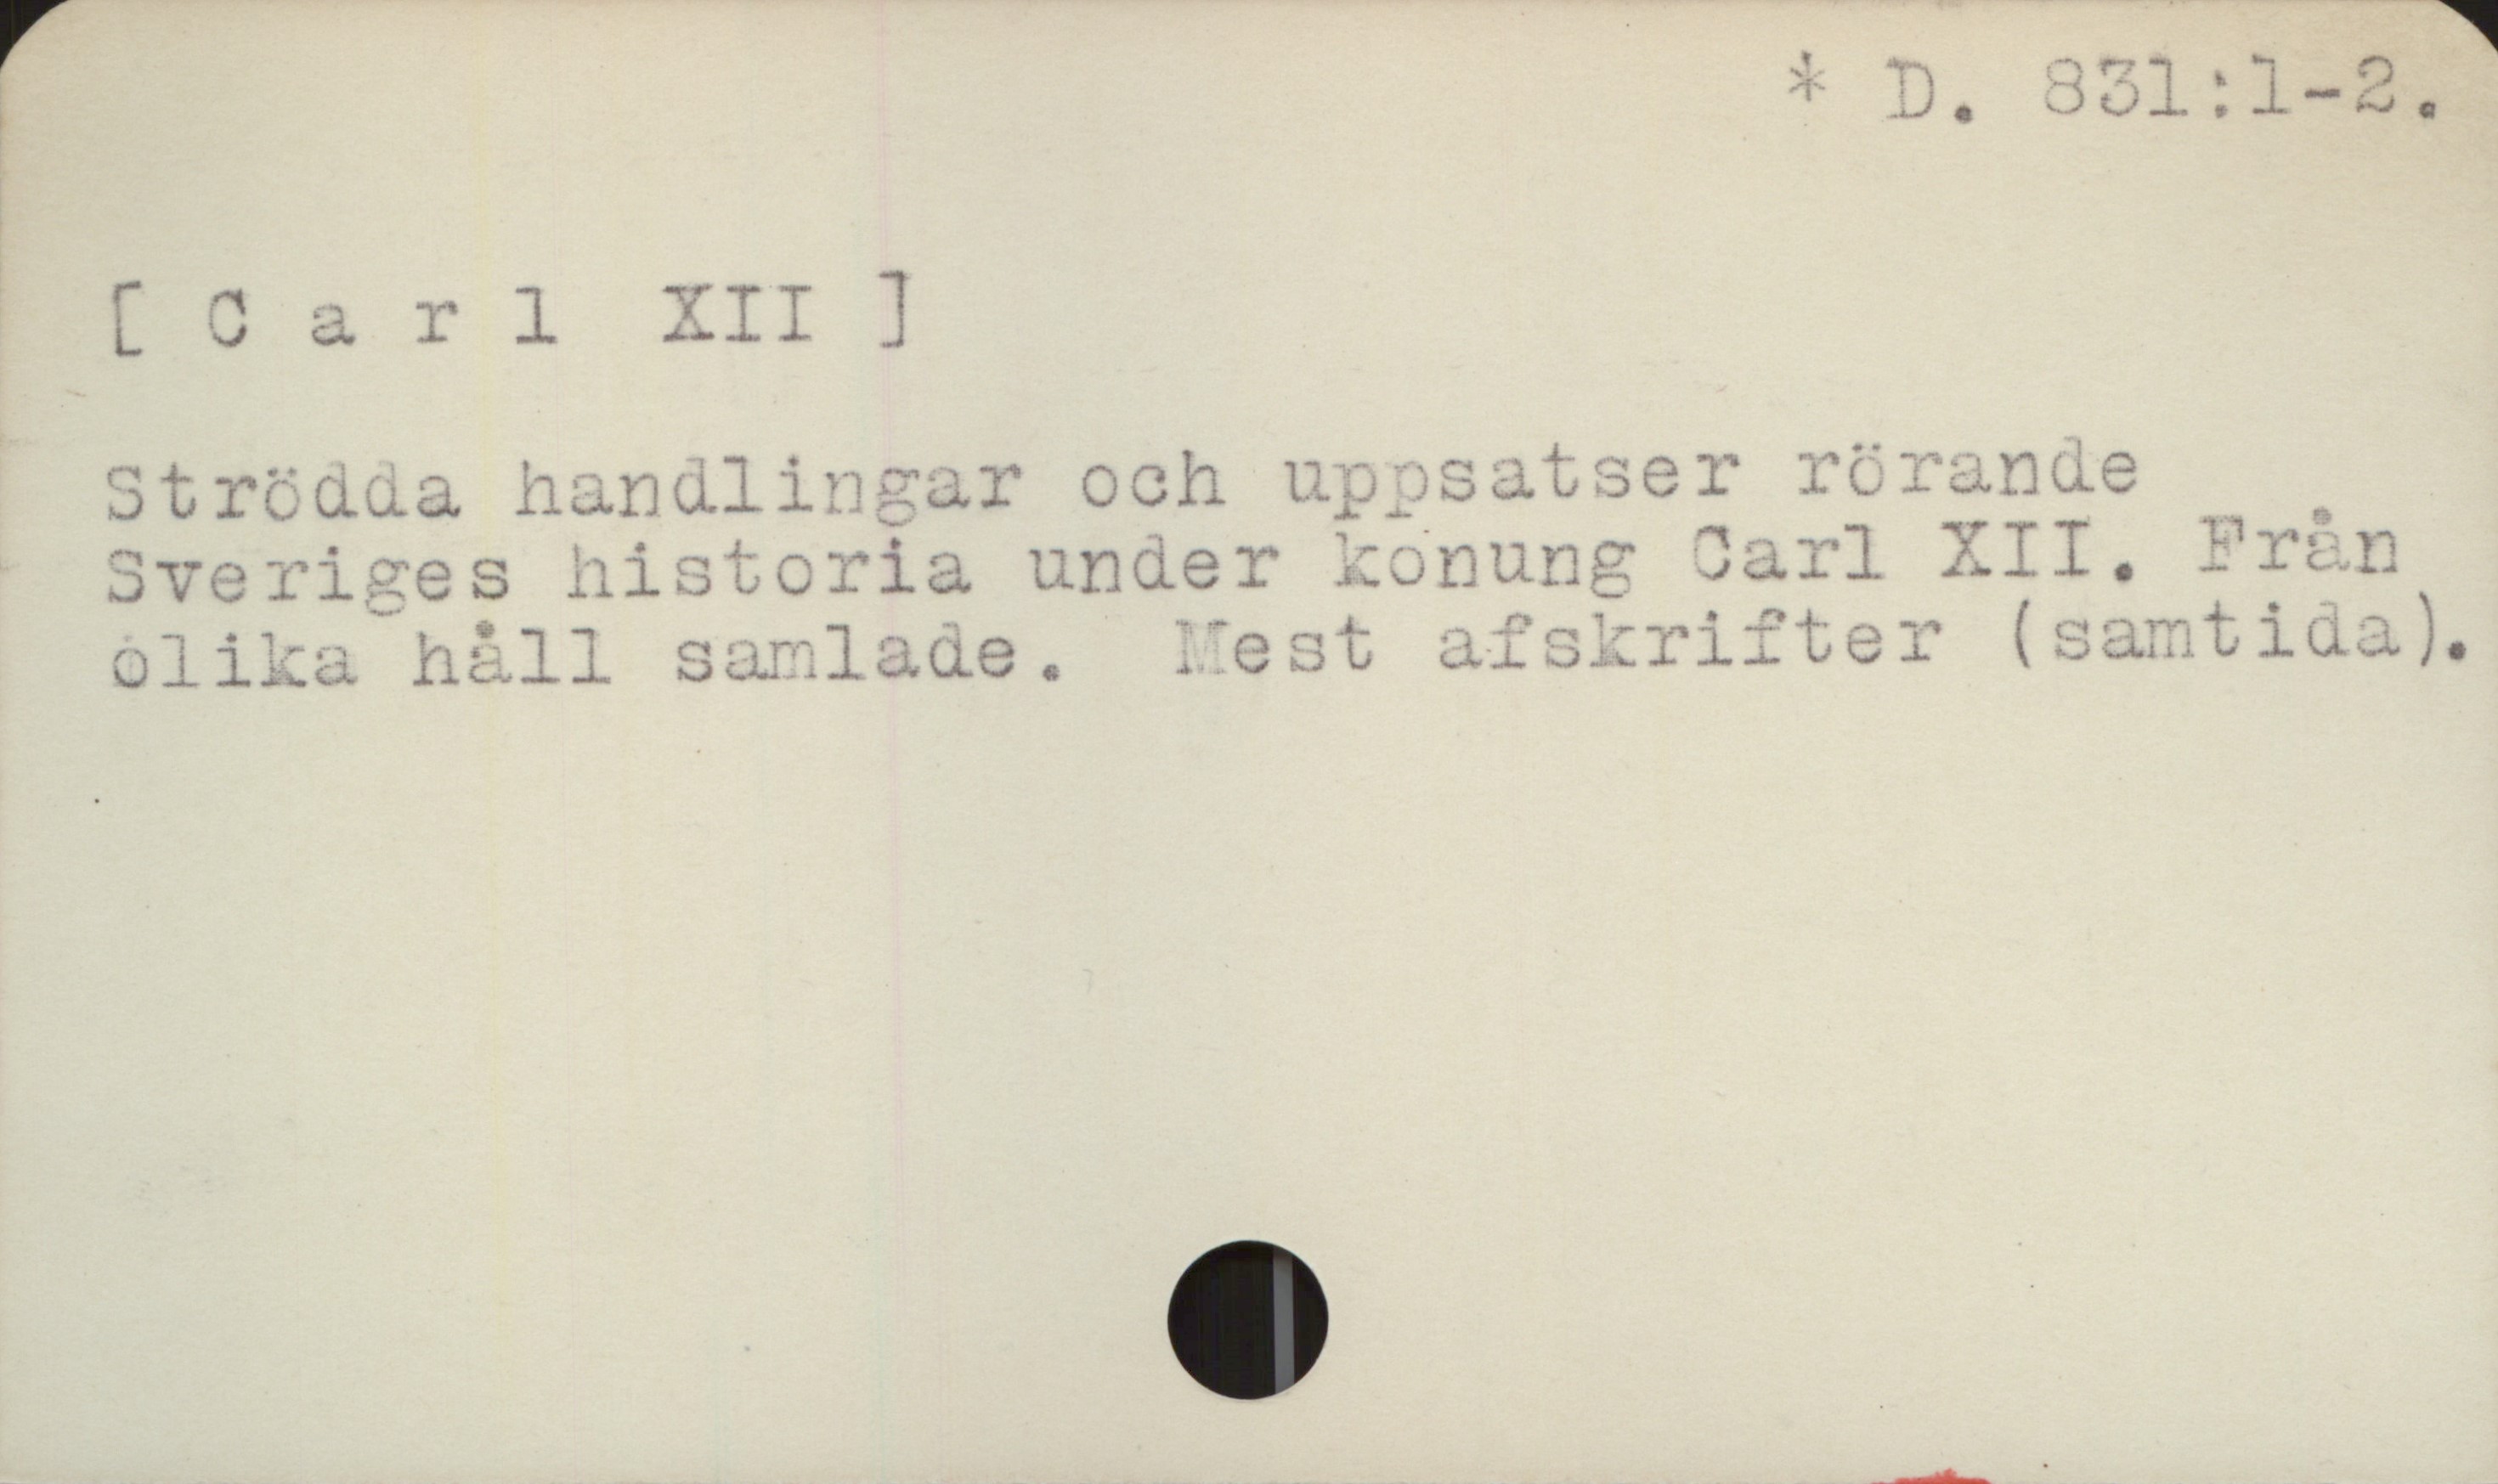  & D, 351:1-2,
( 2 a r 1 XII ]
Strödua handlinsar och uppsatser rörande
Sveriges historia under konung Jarl XII, Fren
olika håll saunlade. est (samt iua).

